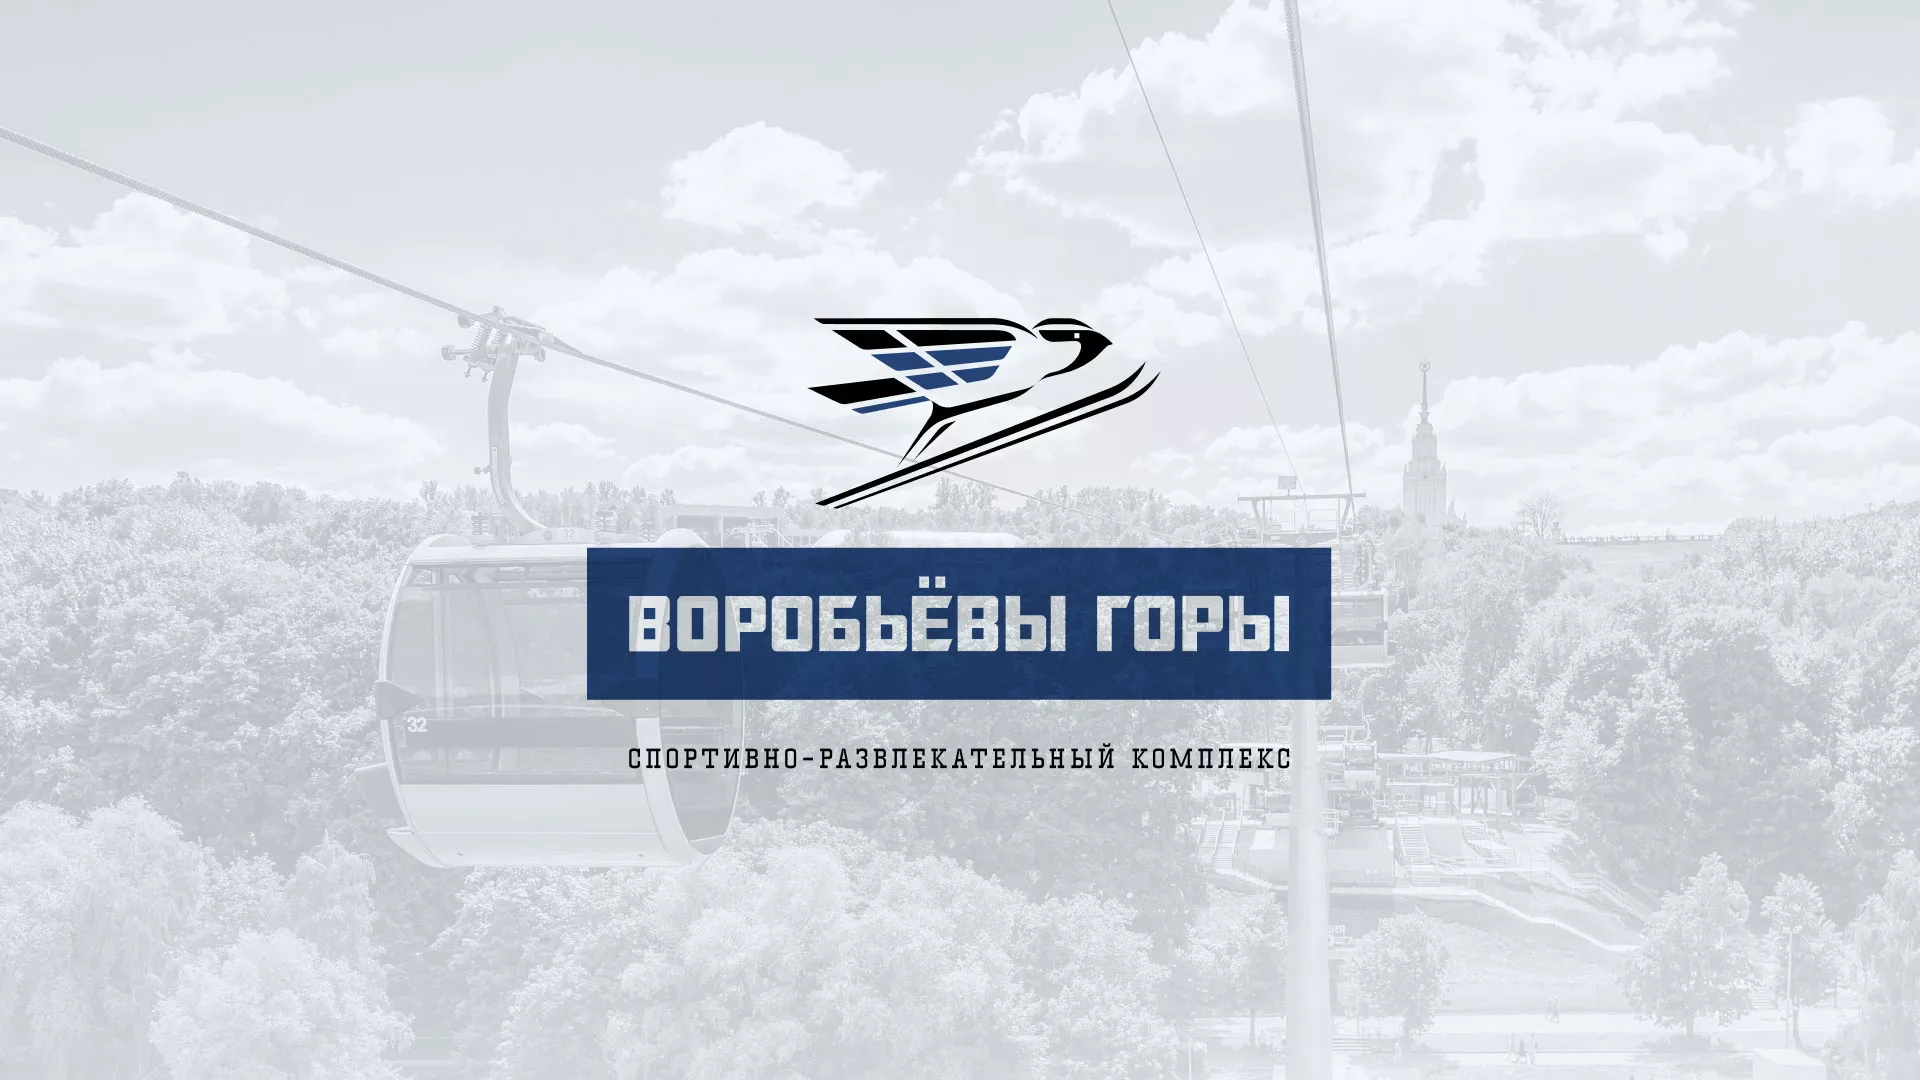 Разработка сайта в Рубцовске для спортивно-развлекательного комплекса «Воробьёвы горы»